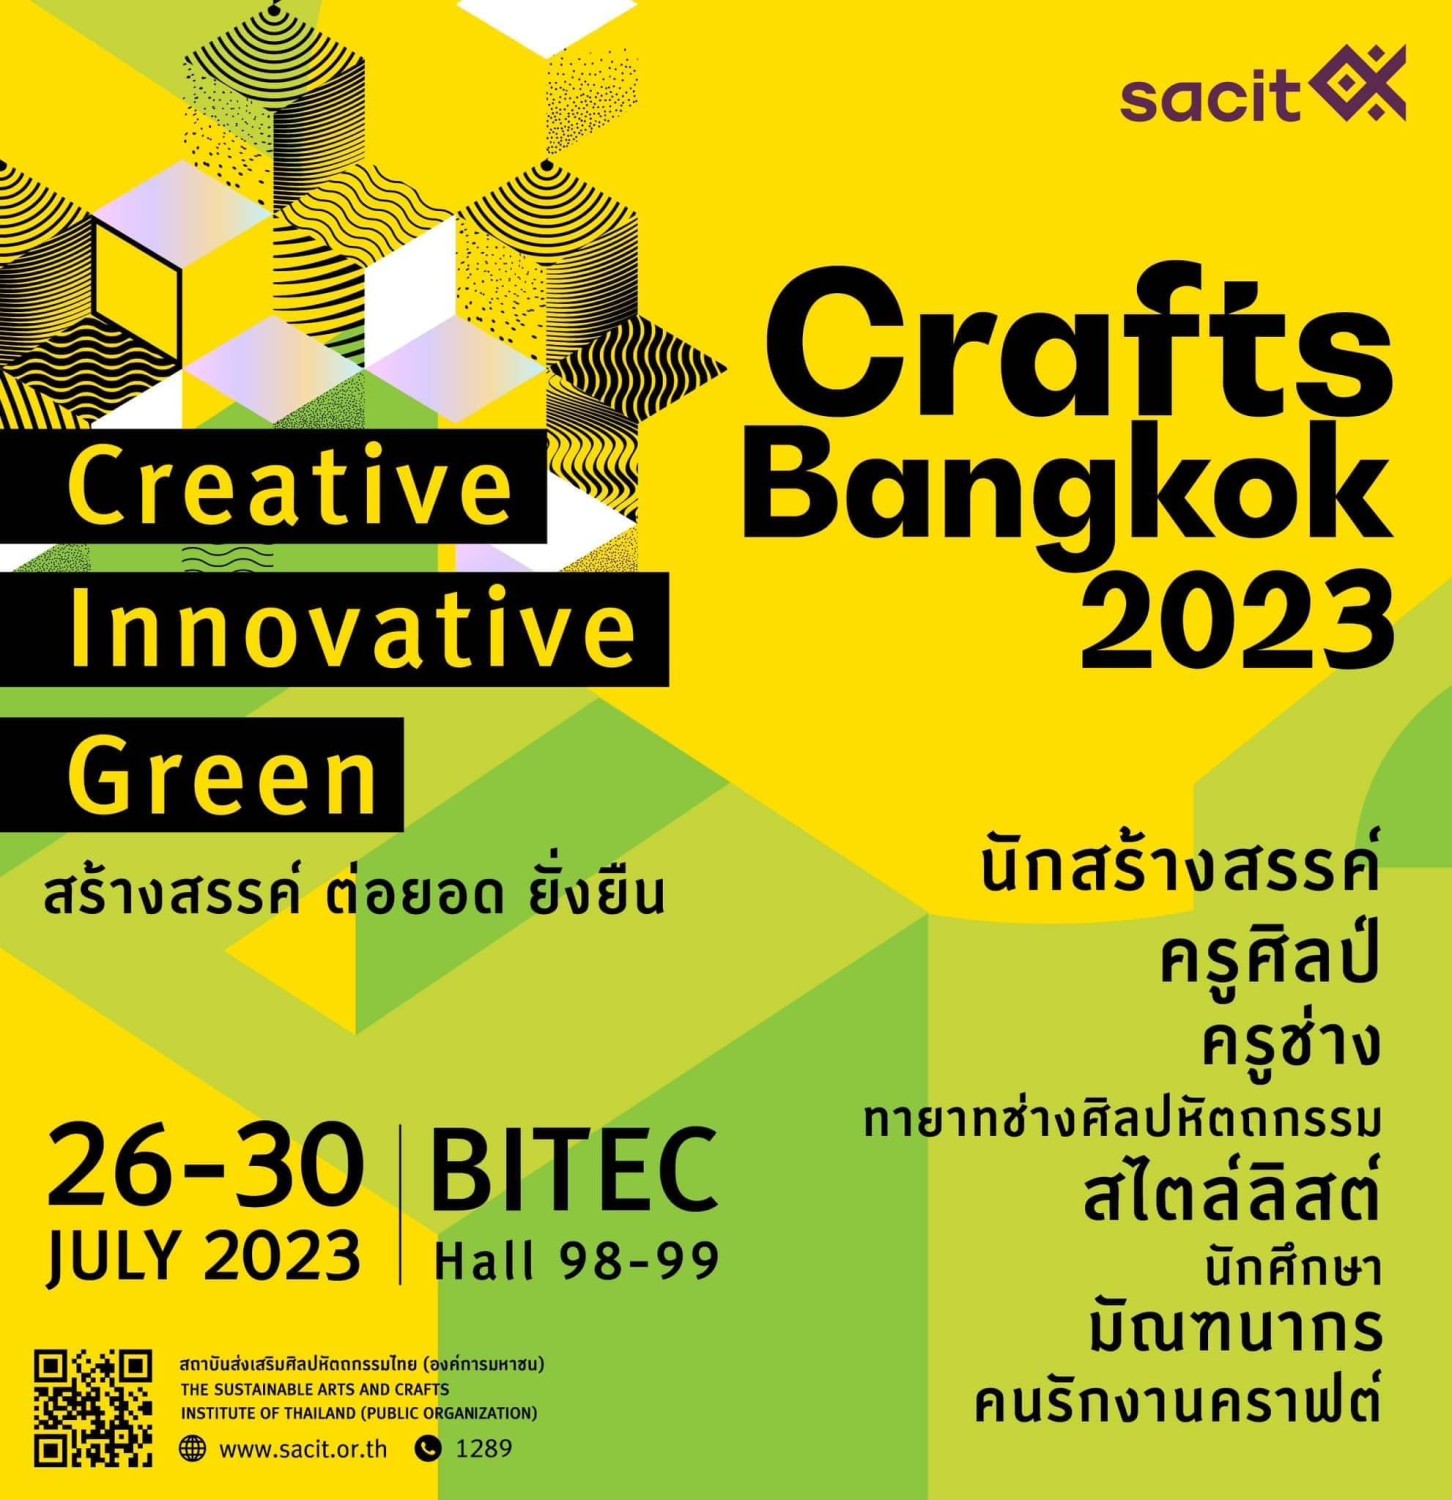 พบกับบุญยรัตน์ไทยคร๊าฟท์ได้ที่งาน Crafts Bangkok 2023